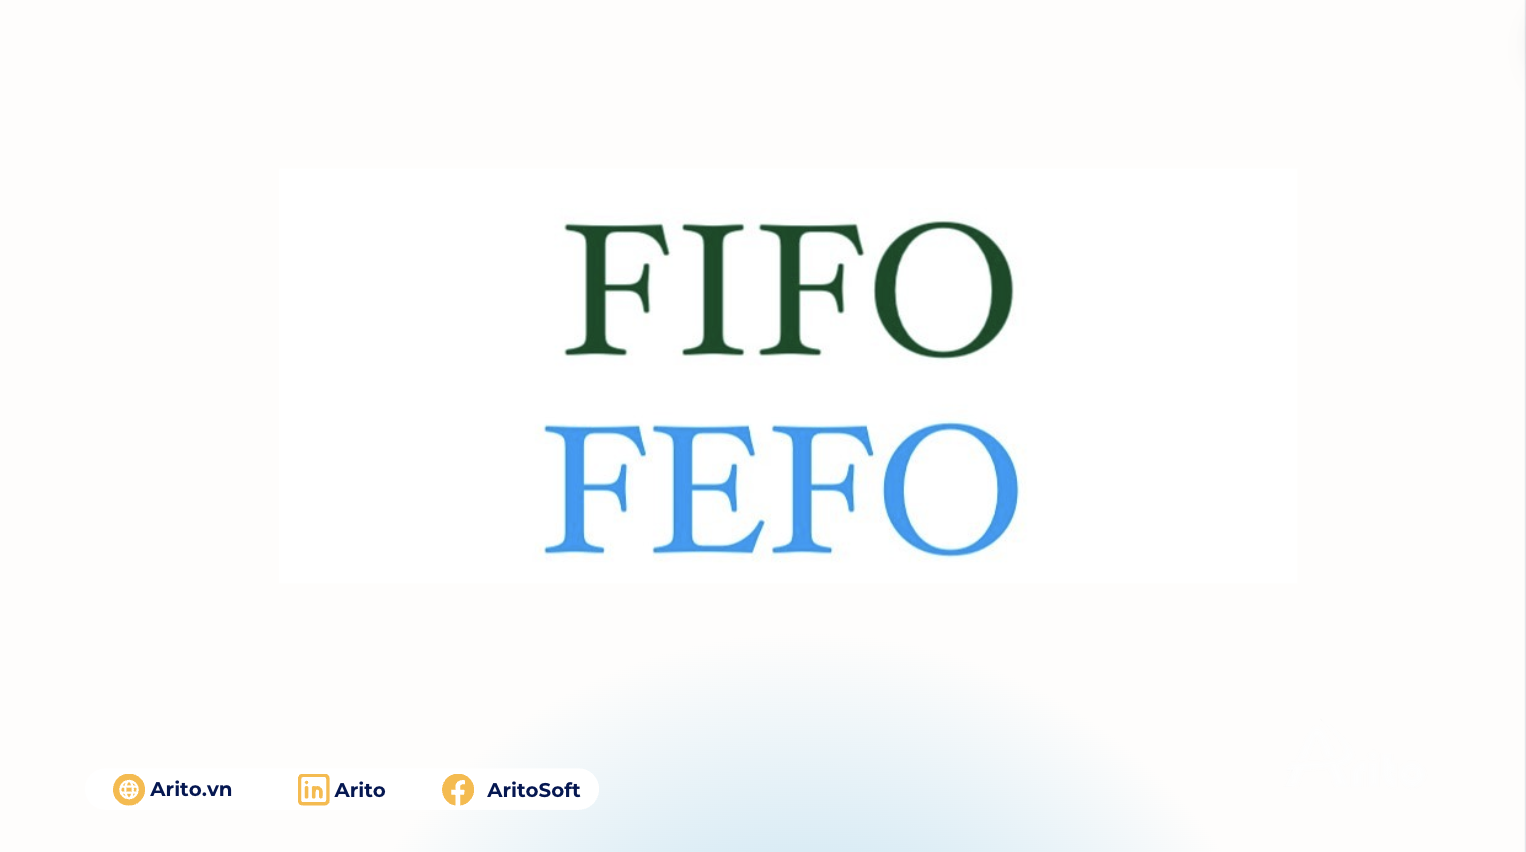 FIFO và FEFO là gì